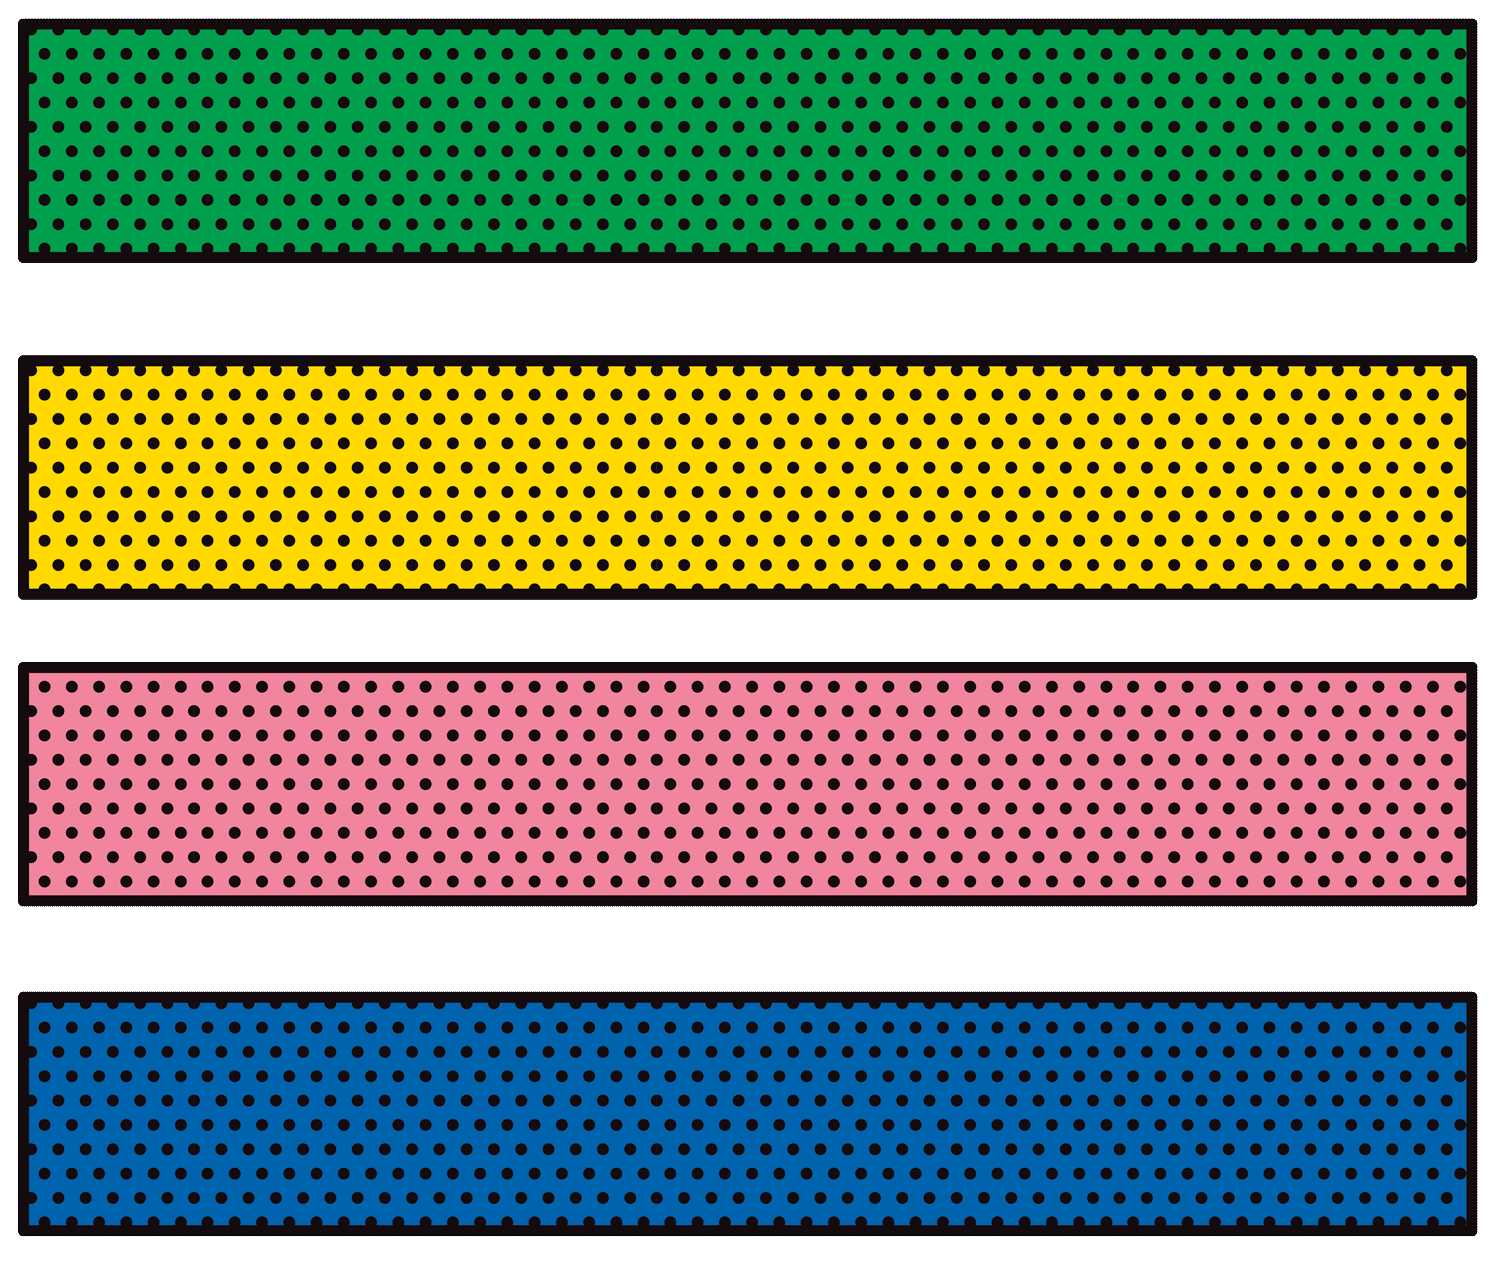 Rectangles de diversos colors, fent referència a la diversitat de reserves